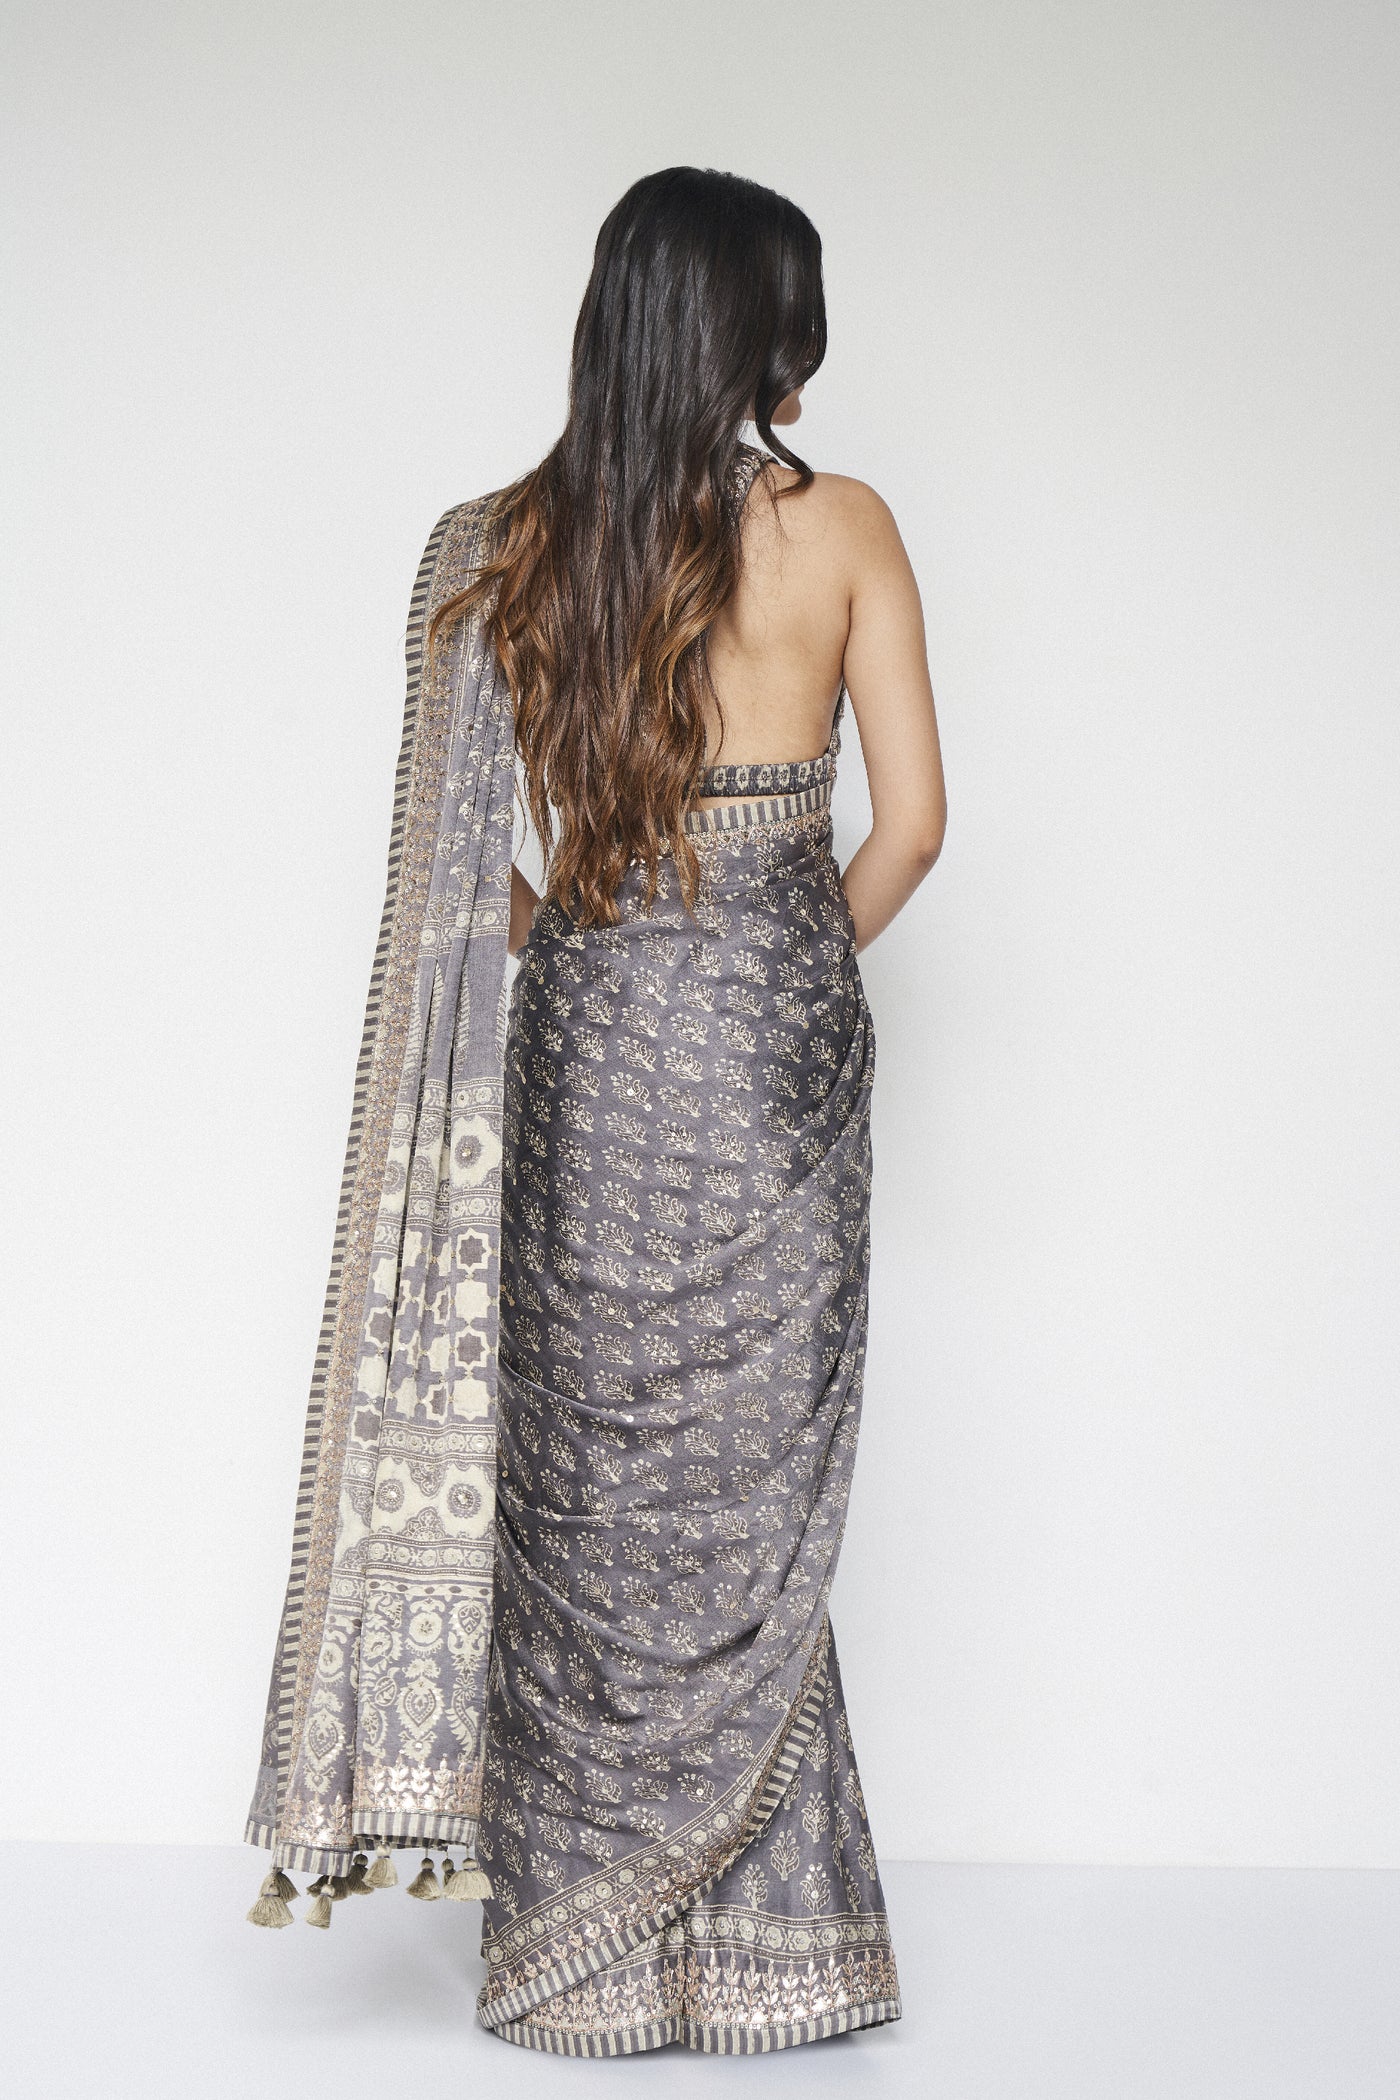 Anita Dongre Ranjeeta Saree Grey indian designer wear online shopping melange singapore